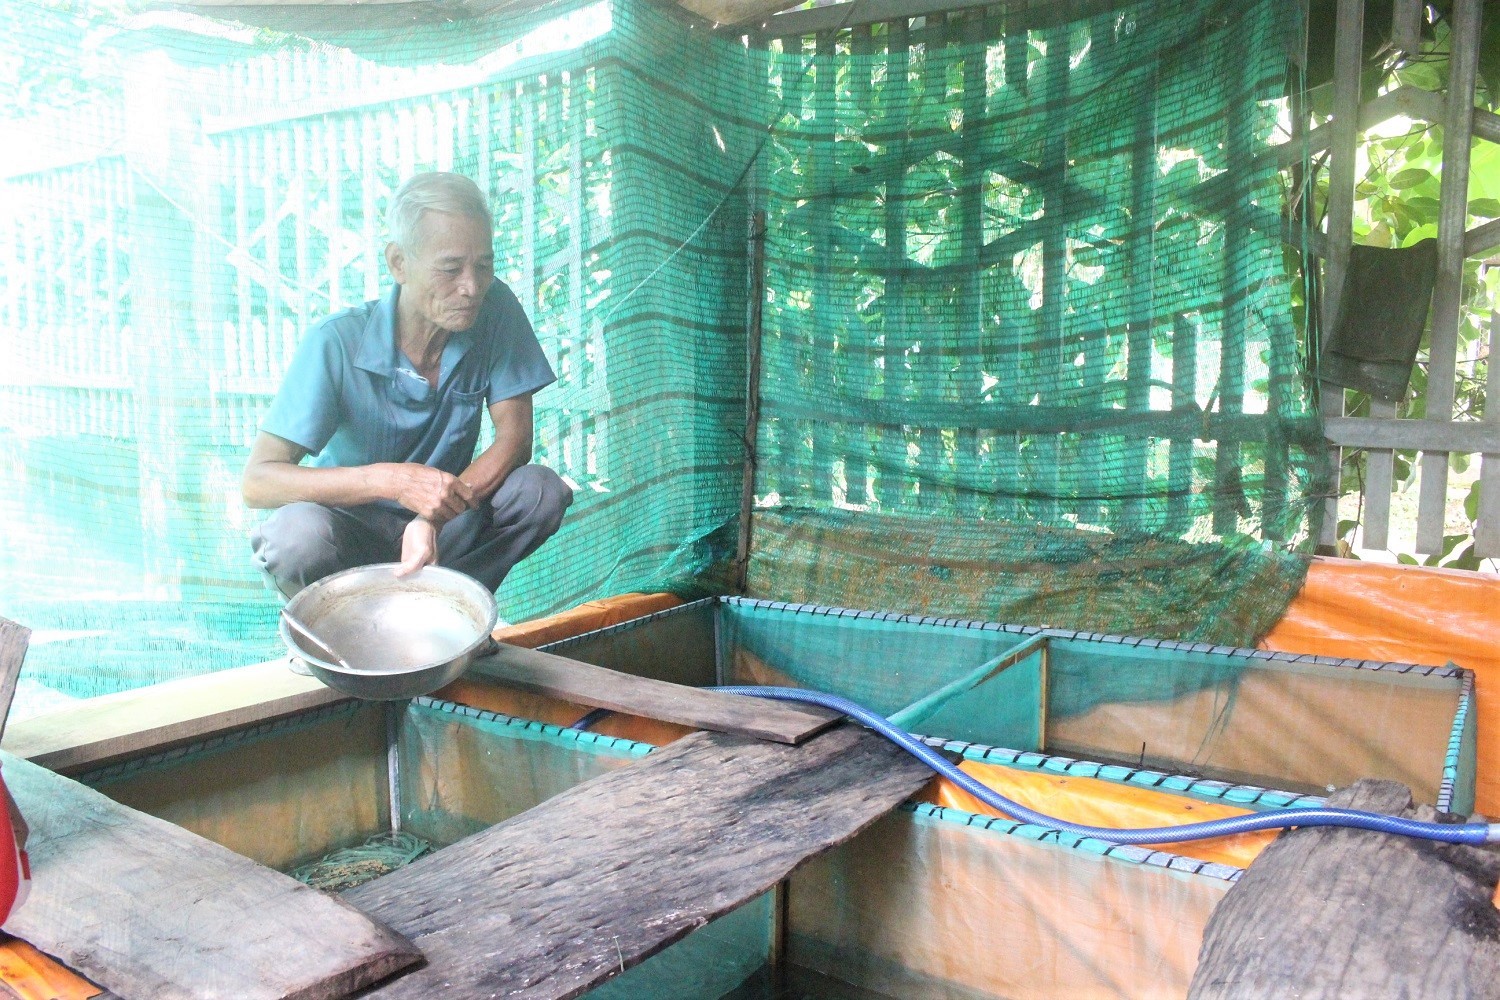 
Chỉ với diện tích 32m2 nhưng bằng cách nuôi lươn không bùn trong bể xi măng khoa học và sau thời gian gia đình ông Nguyễn Kim Sao trú tại xã Long Tân, huyện Phú Riềng, tỉnh Bình Phước đã thu lãi hàng trăm triệu đồng từ bán lươn thịt thương phẩm
